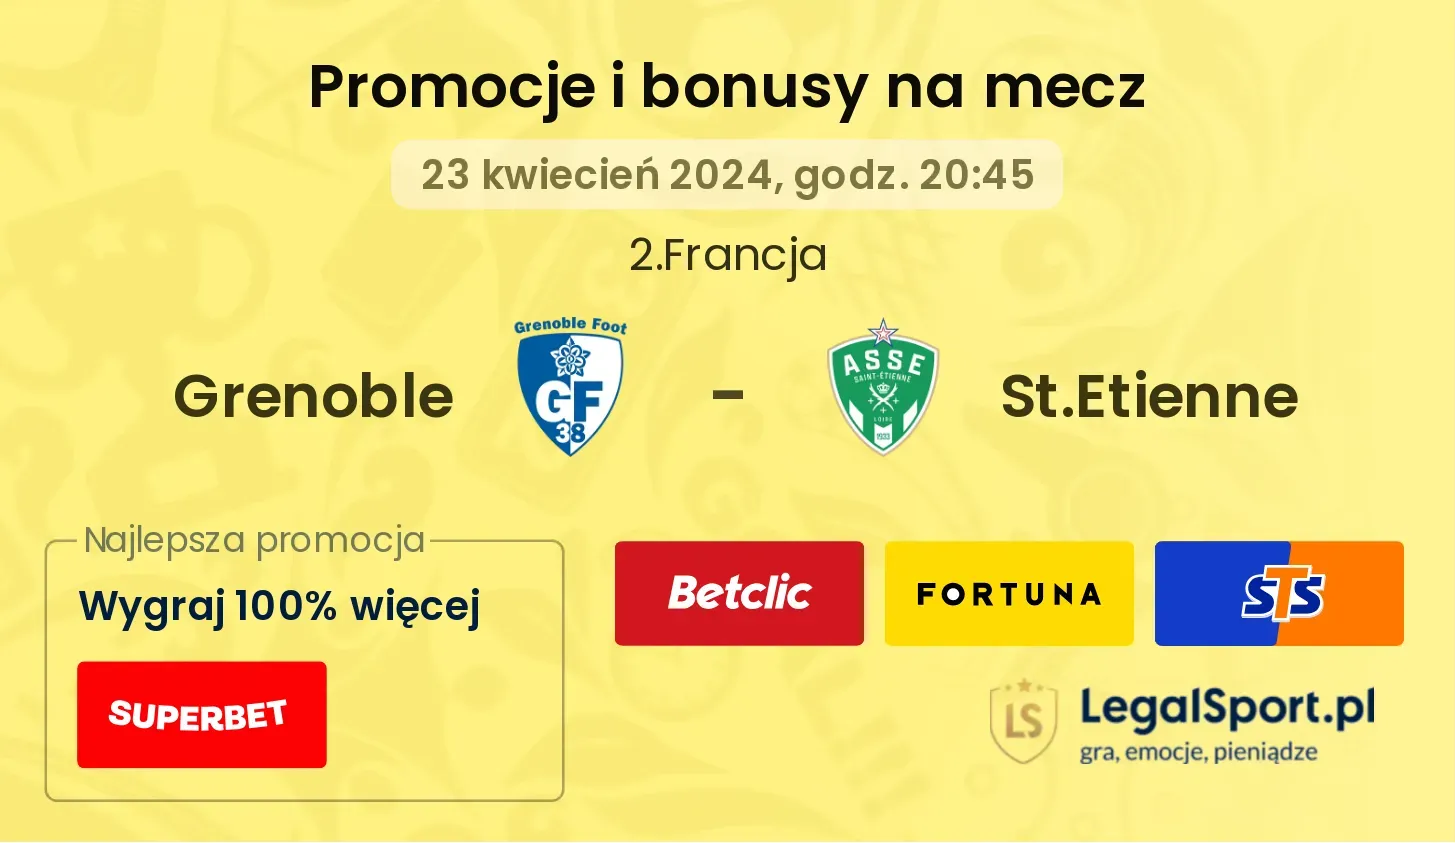 Grenoble - St.Etienne promocje bonusy na mecz